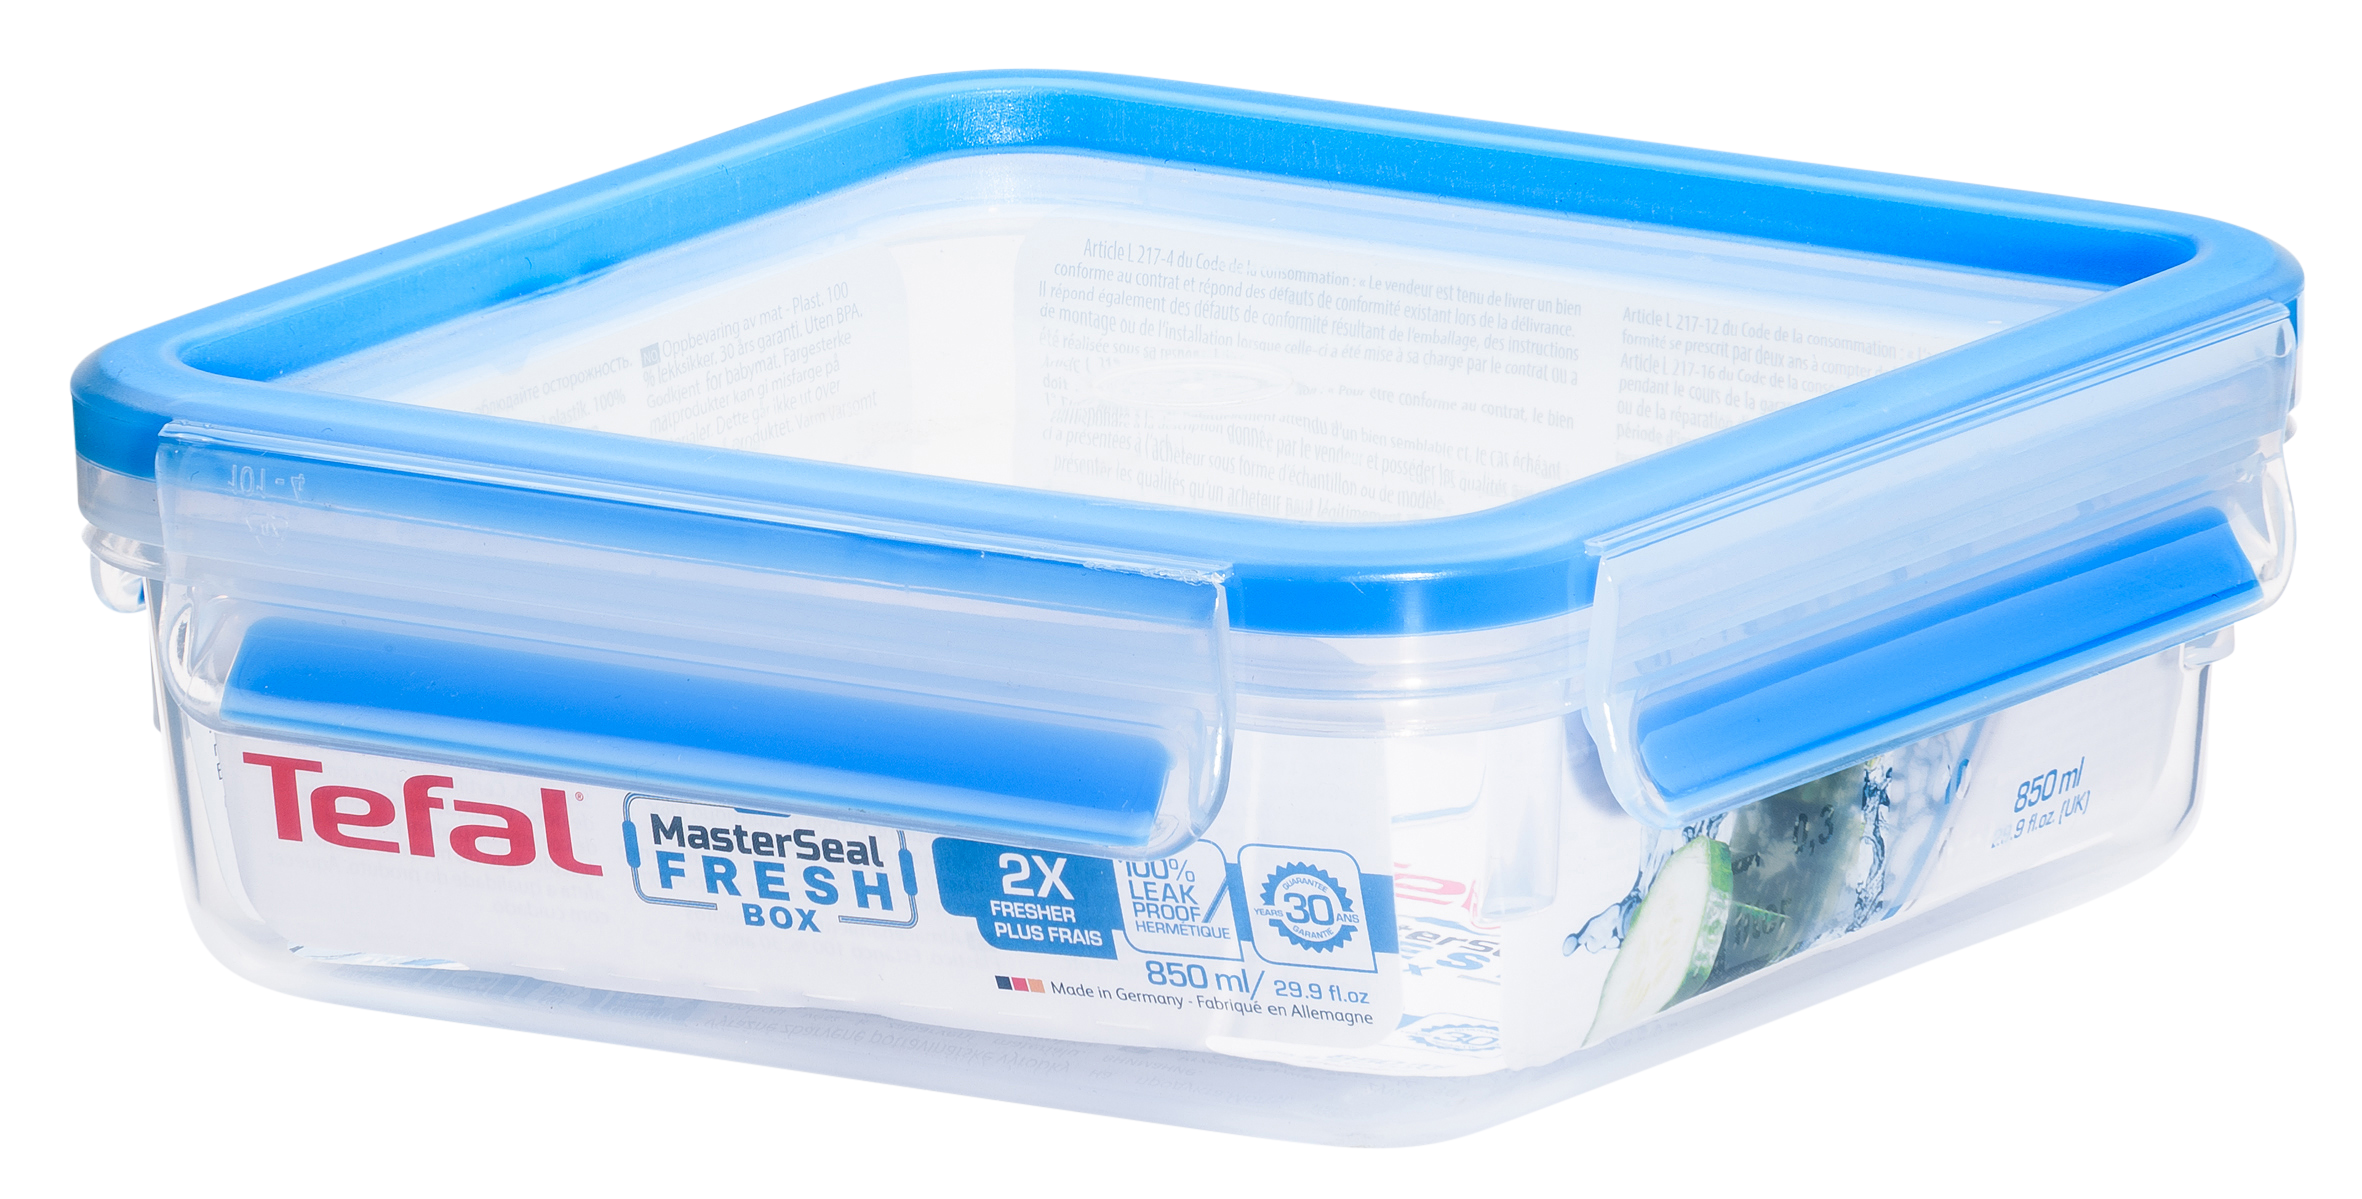 Bộ 3 hộp bảo quản thực phẩm nhựa Tefal Masterseal Fresh (850ml x 3) - Hàng chính hãng